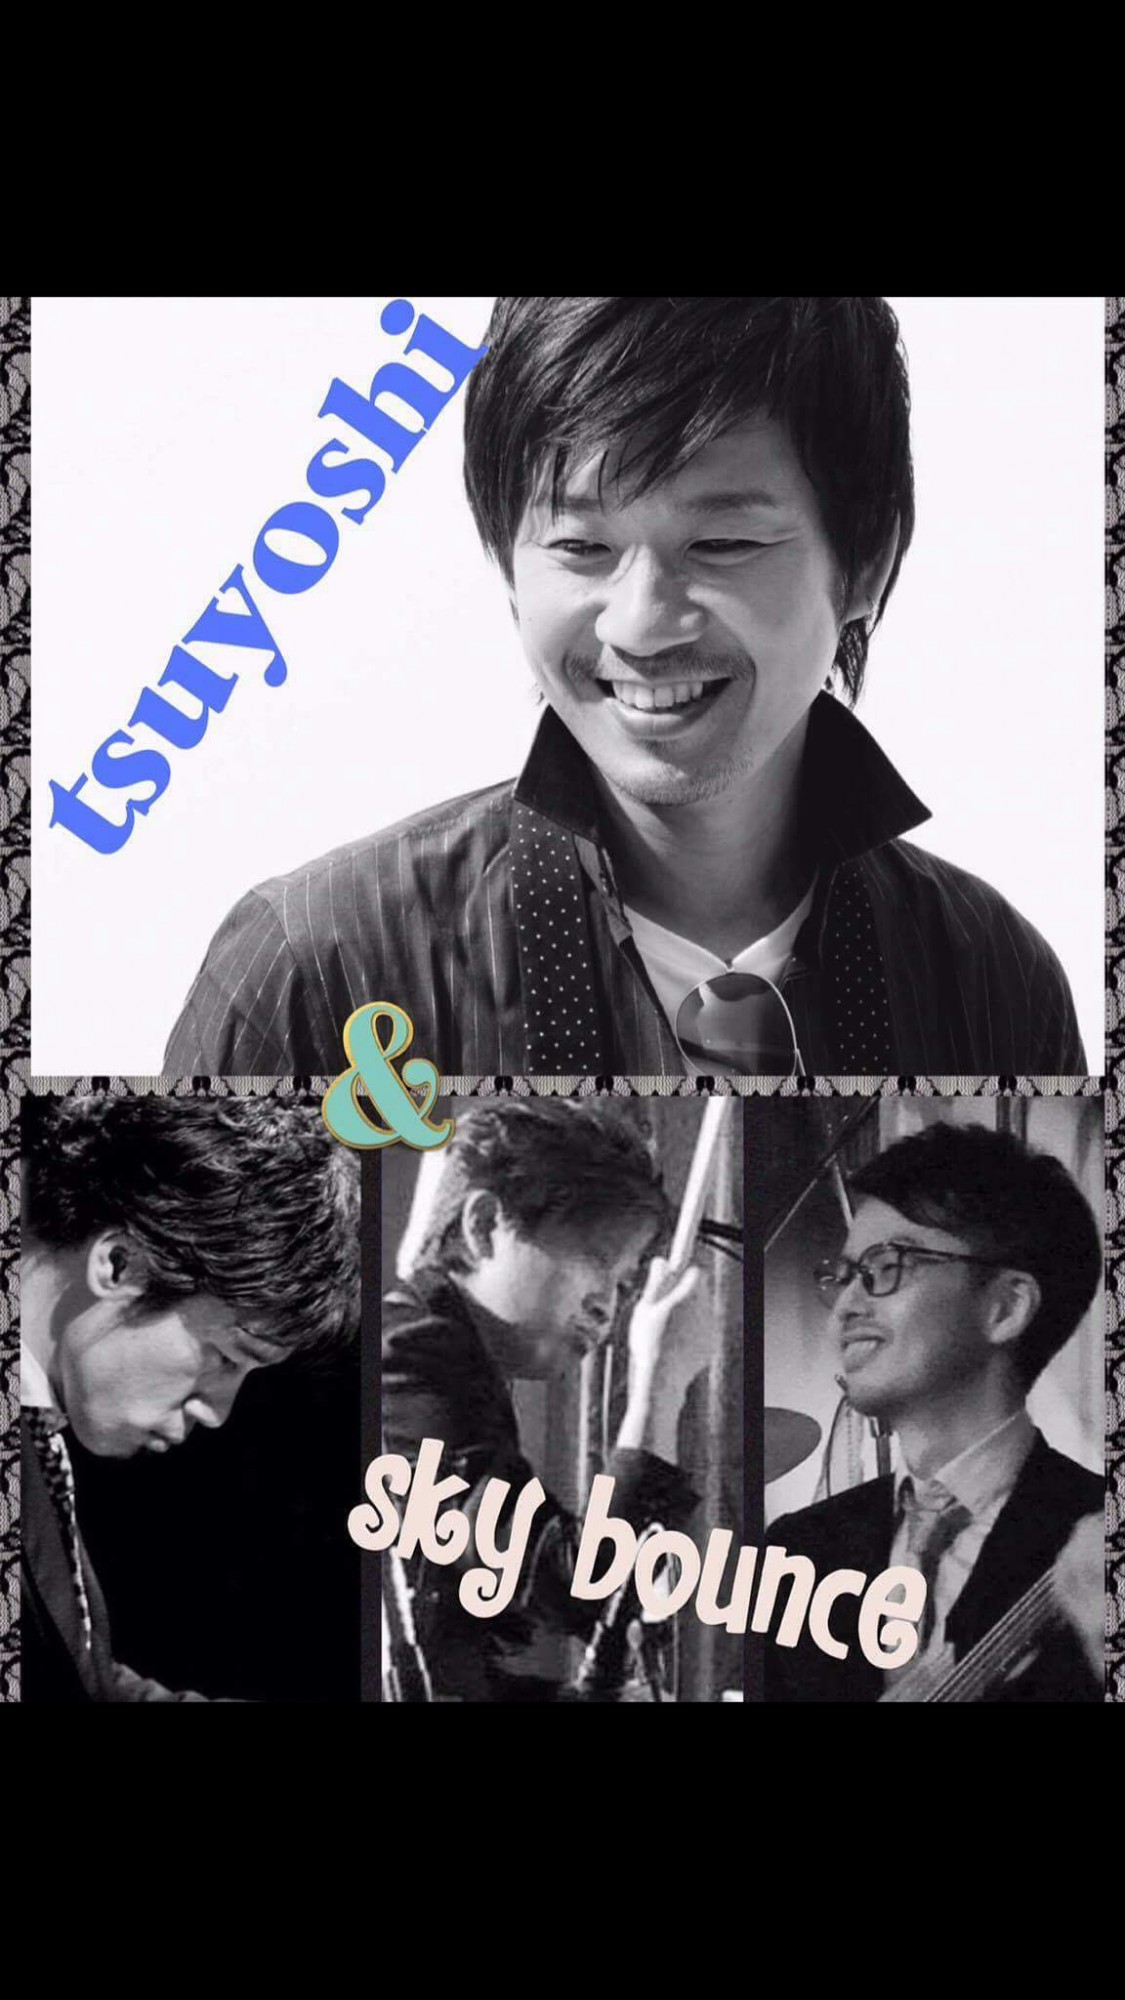 たけしのtvタックルのエンディングを歌っていますvo Tsuyoshi Skybounce Live City Cafe シティー カフェ